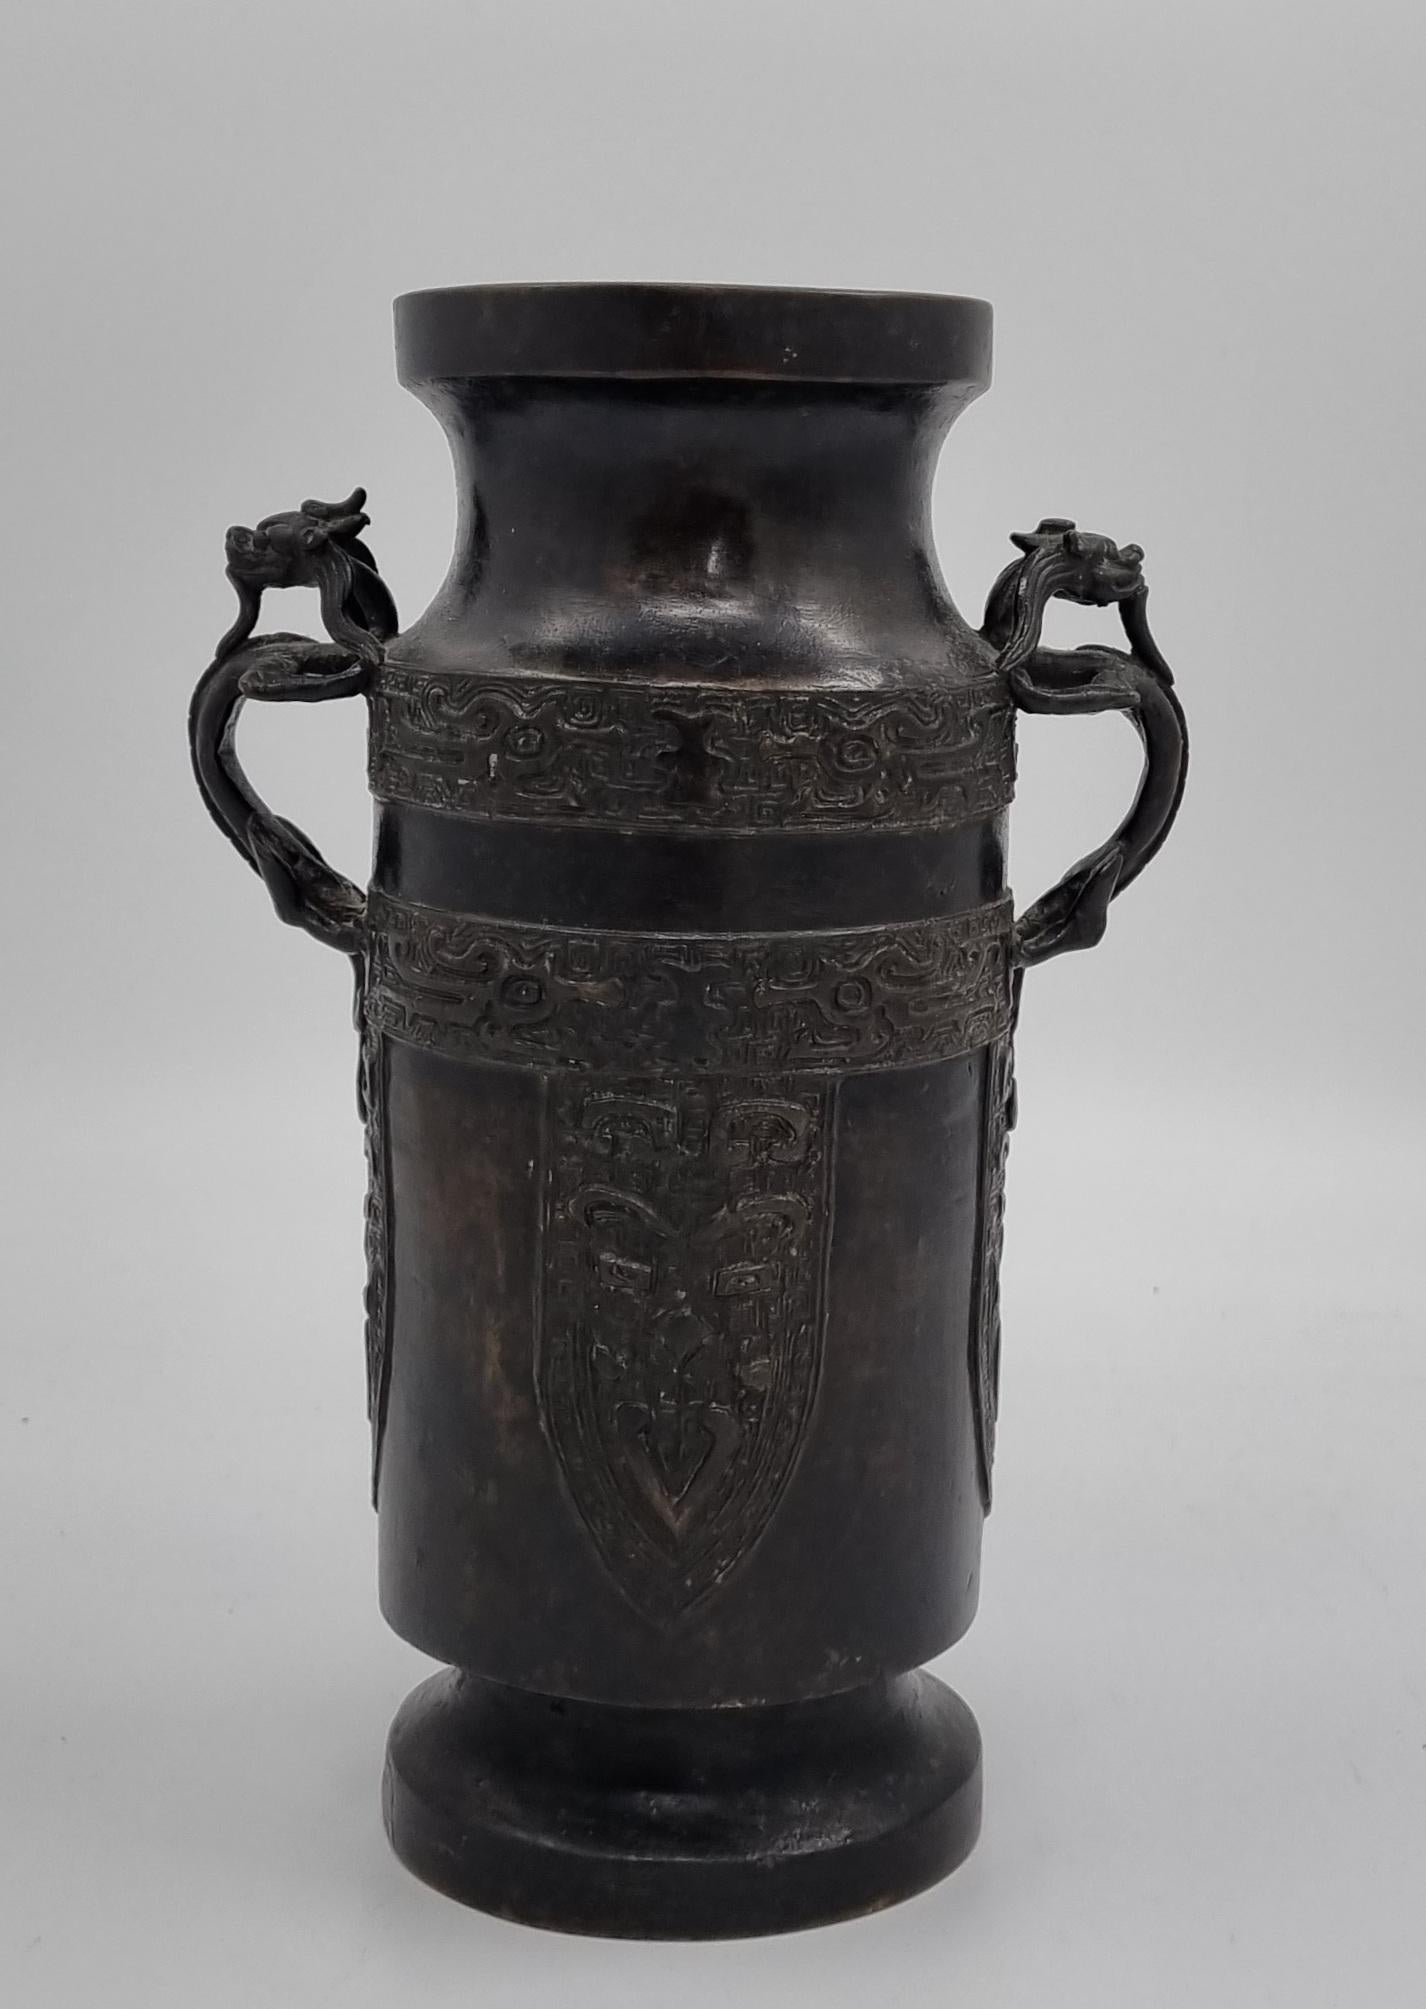 Cast Ming Dynasty Bronze Vase ( 1368- 1644 ) For Sale